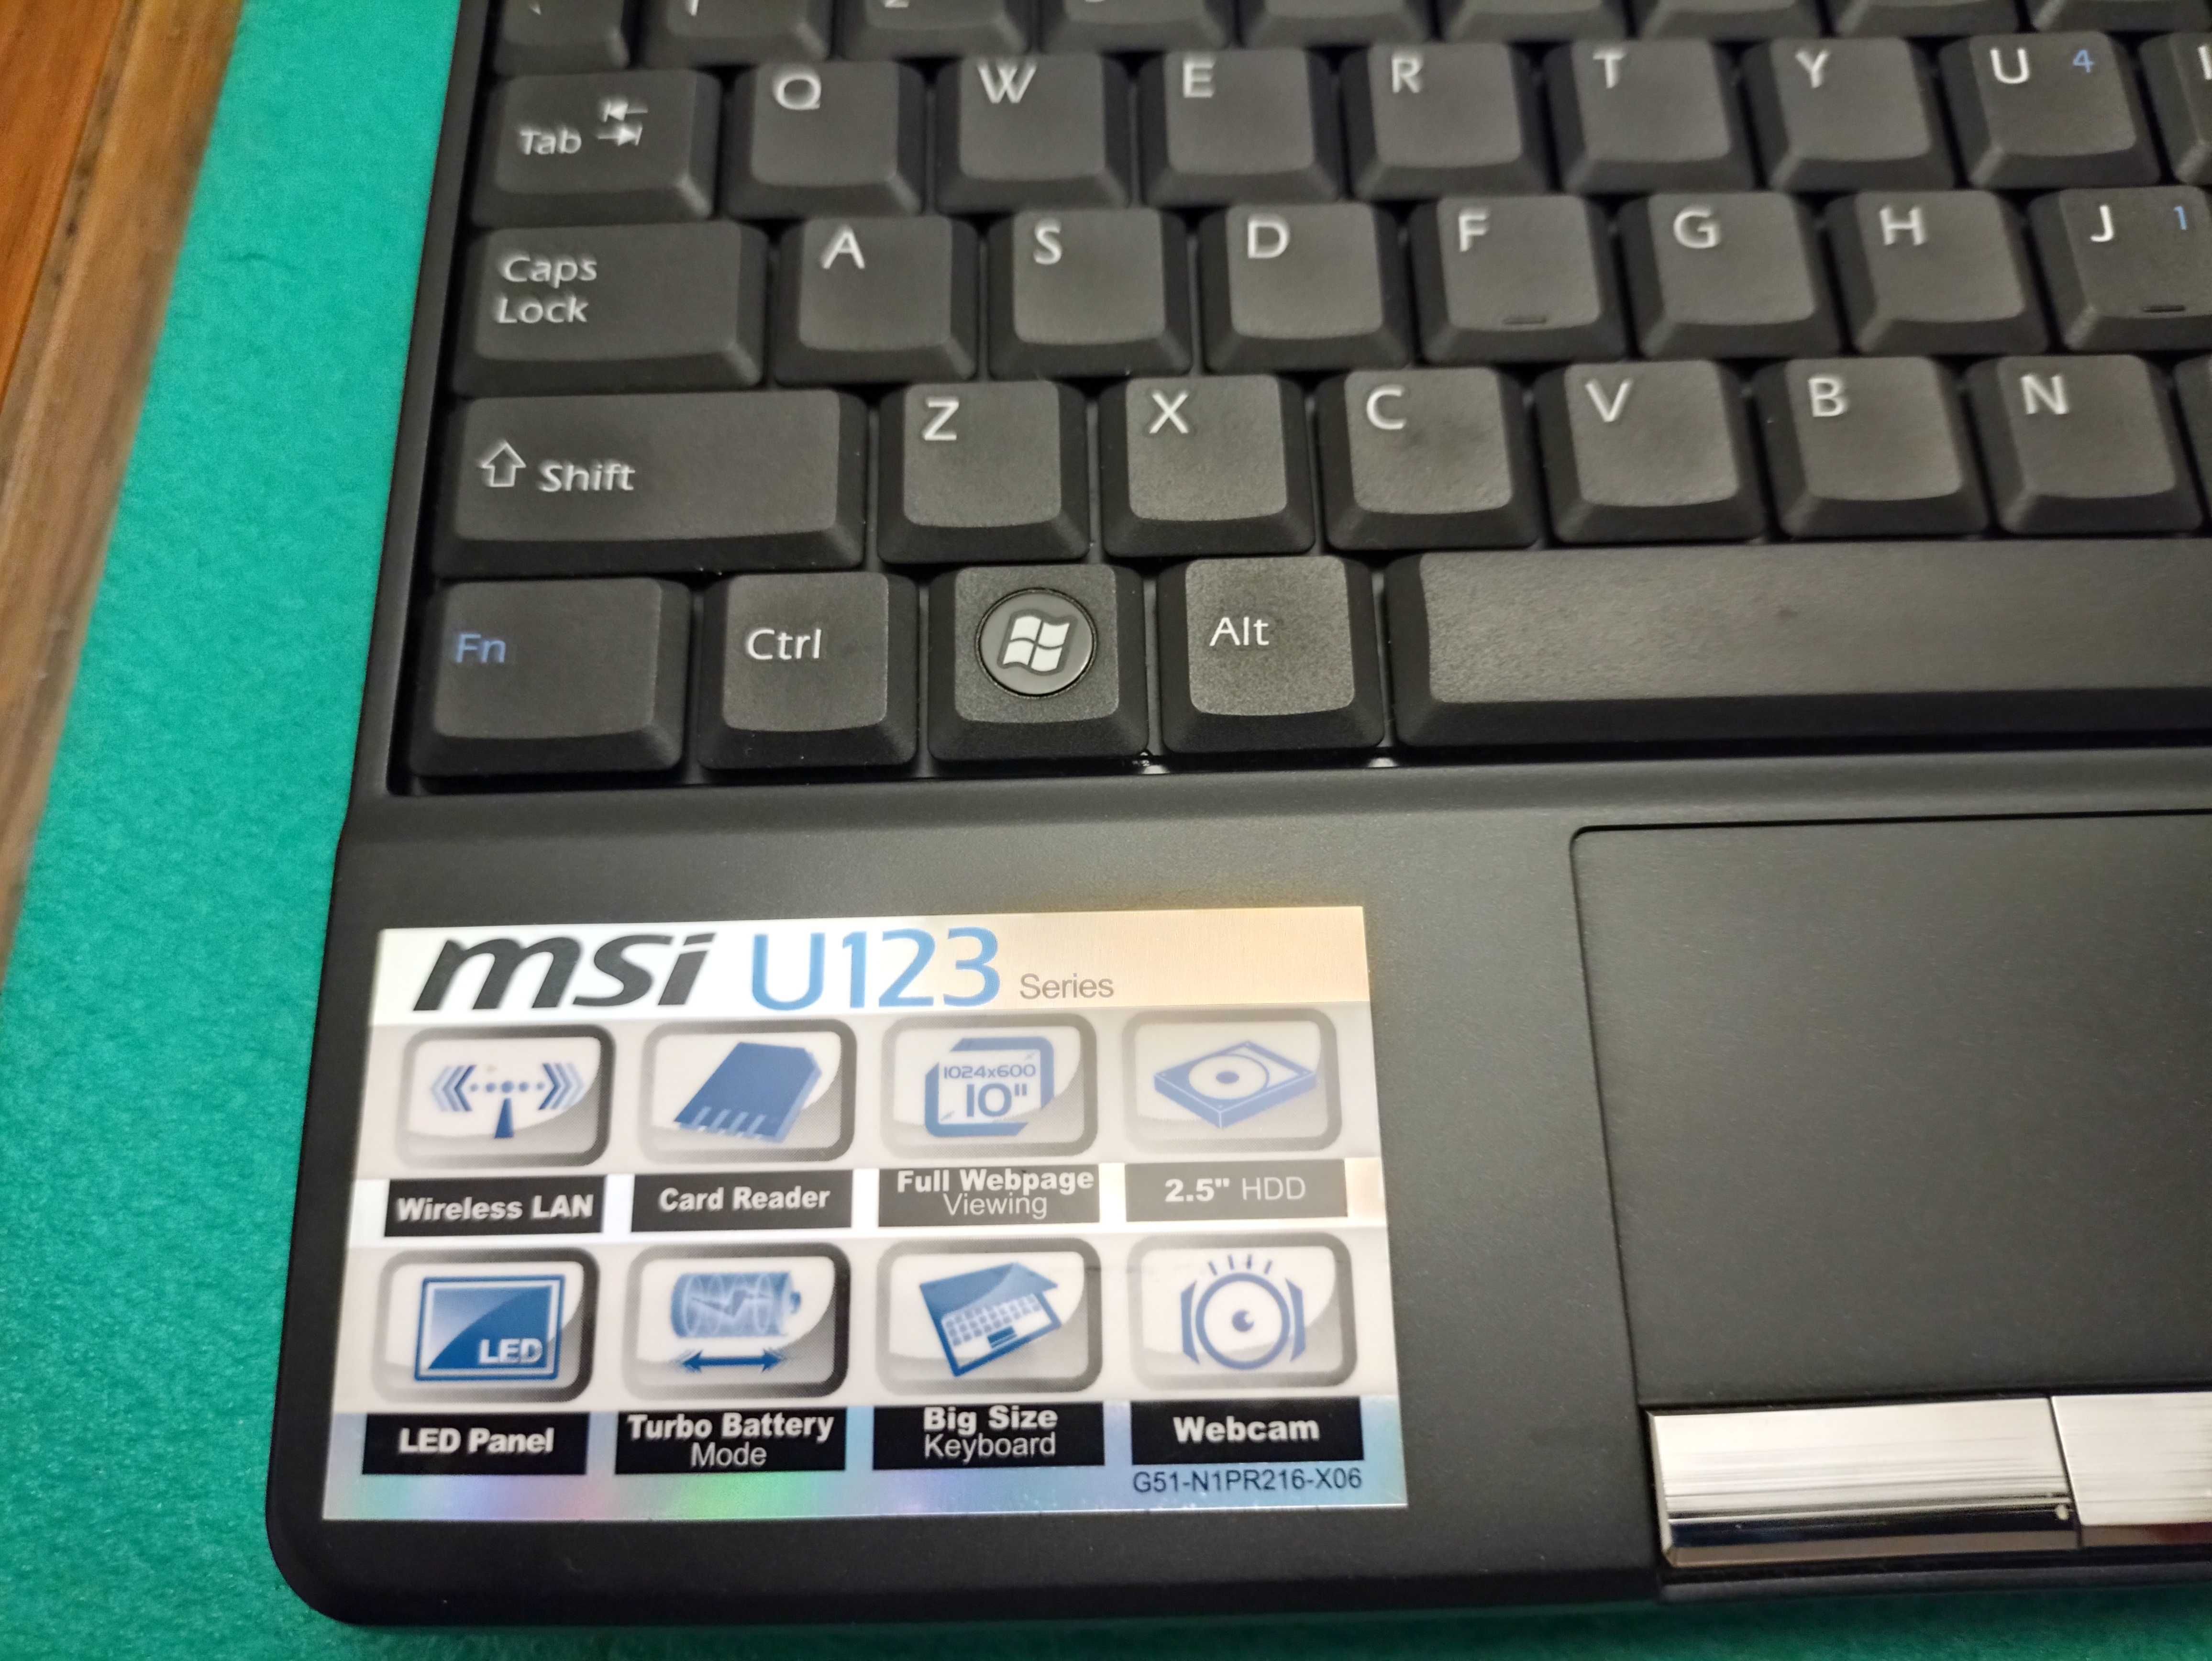 Notebook MSI U123 10”, Intel Atom N280 1.66GHz, 1GB RAM, 160GB HDD